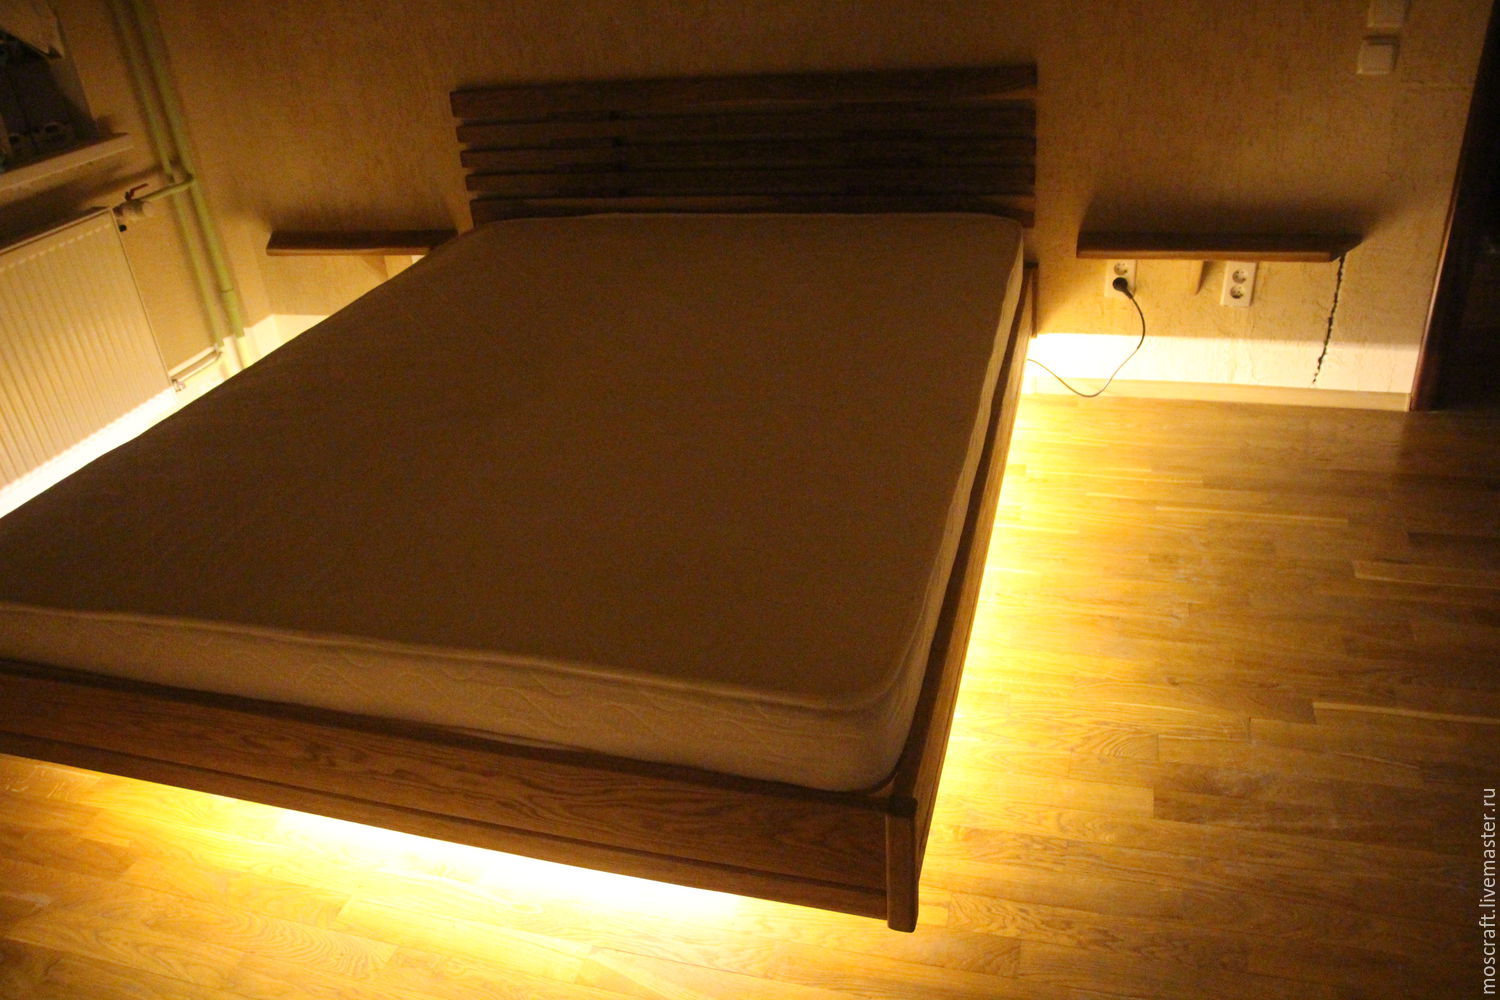 Кровать С Подсветкой Снизу